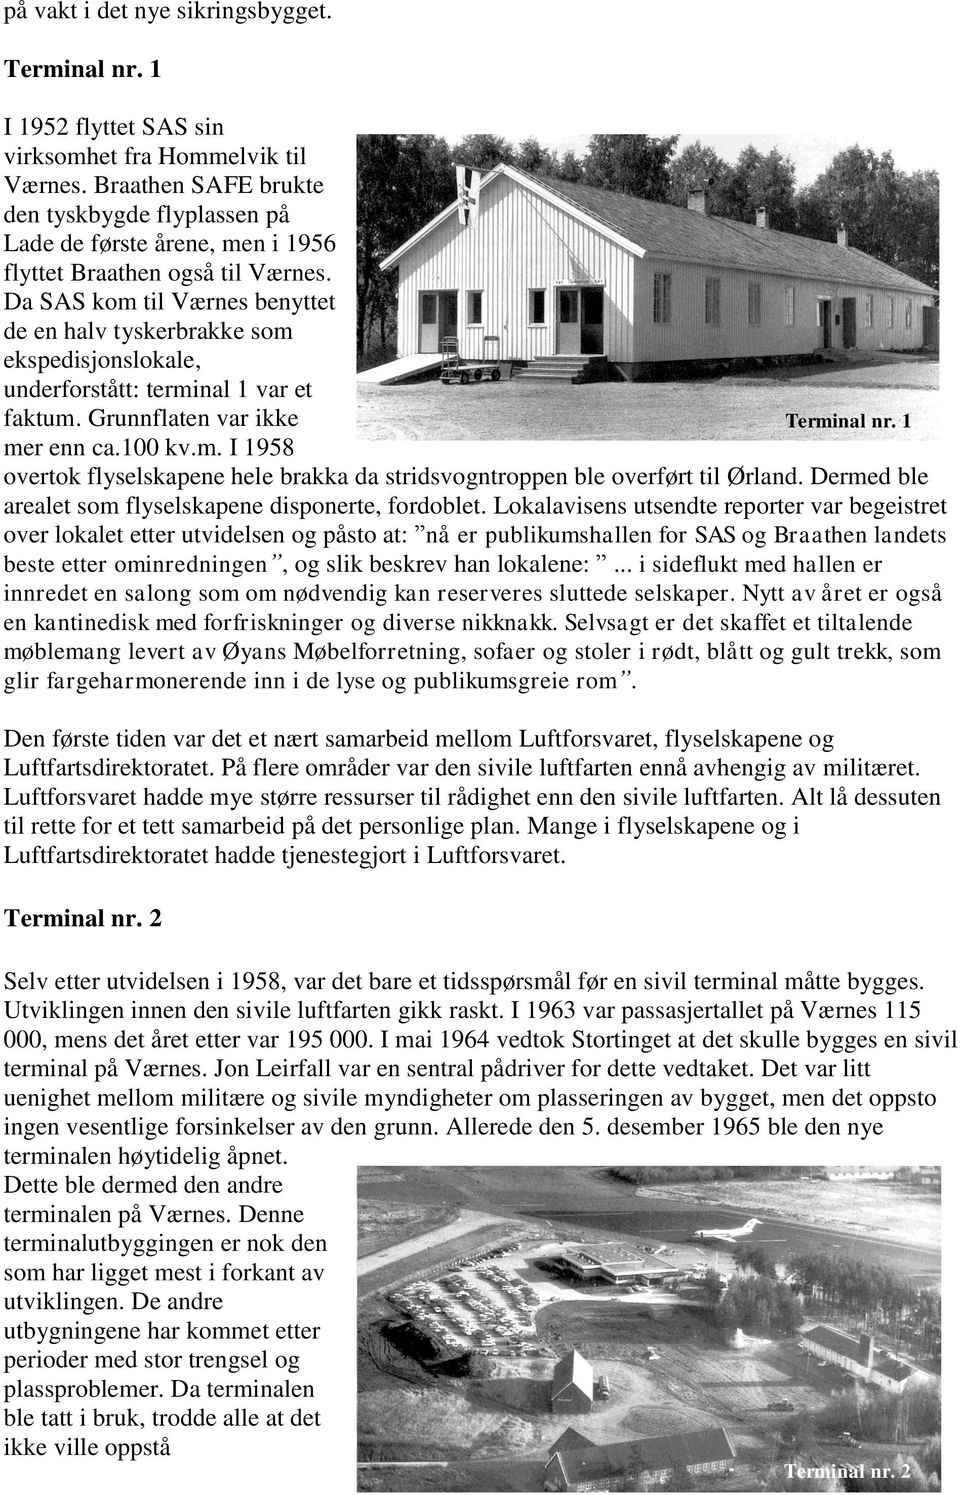 Da SAS kom til Værnes benyttet de en halv tyskerbrakke som ekspedisjonslokale, underforstått: terminal 1 var et faktum. Grunnflaten var ikke Terminal nr. 1 mer enn ca.100 kv.m. I 1958 overtok flyselskapene hele brakka da stridsvogntroppen ble overført til Ørland.